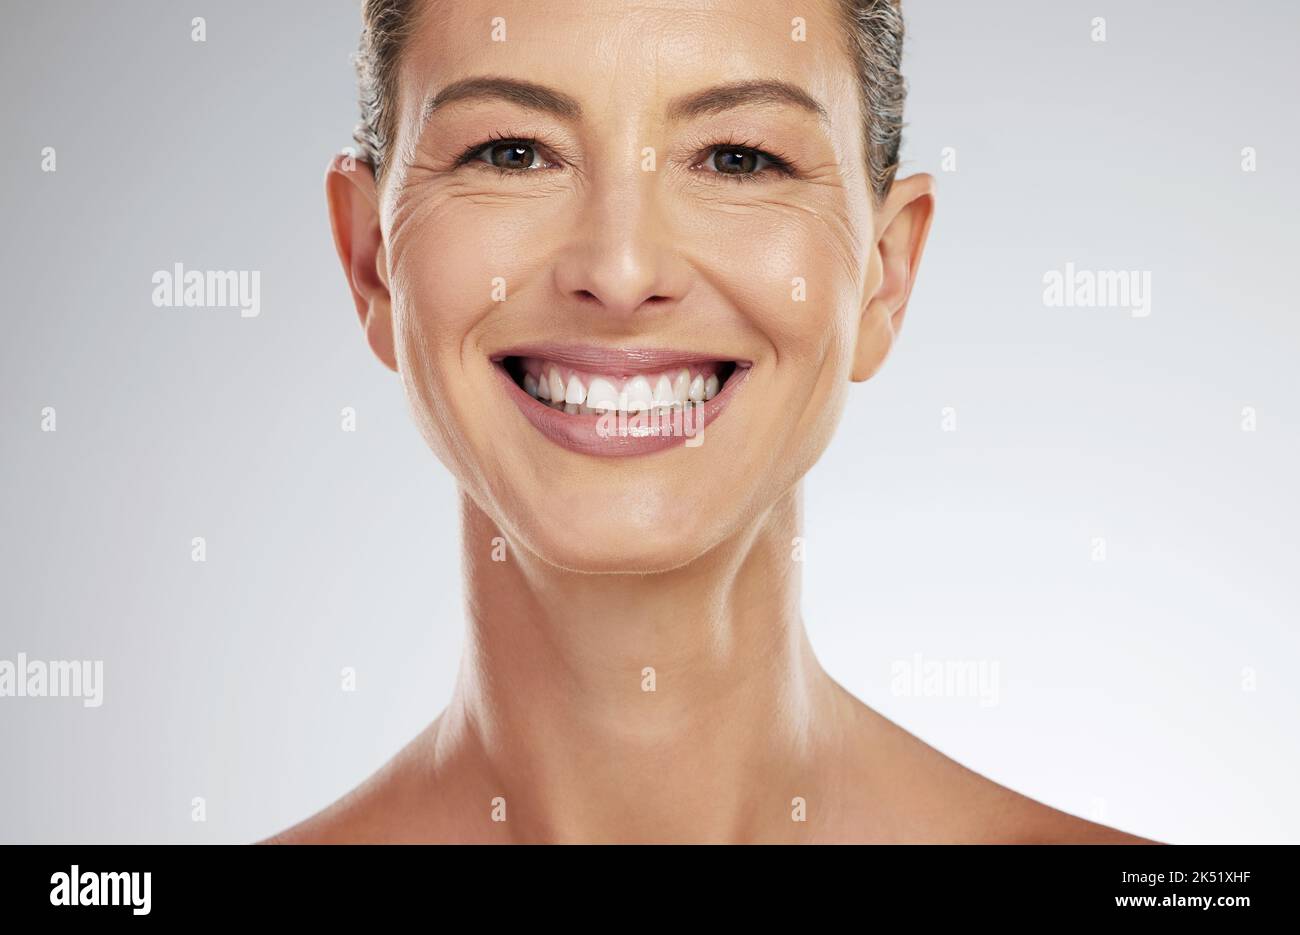 Gesicht, Porträt und Hautpflege für reife Frauen mit einem Lächeln für die Gesichts Gesundheit vor einem grauen Mockup Studio Hintergrund. Ältere Modell glücklich über natürliche Stockfoto